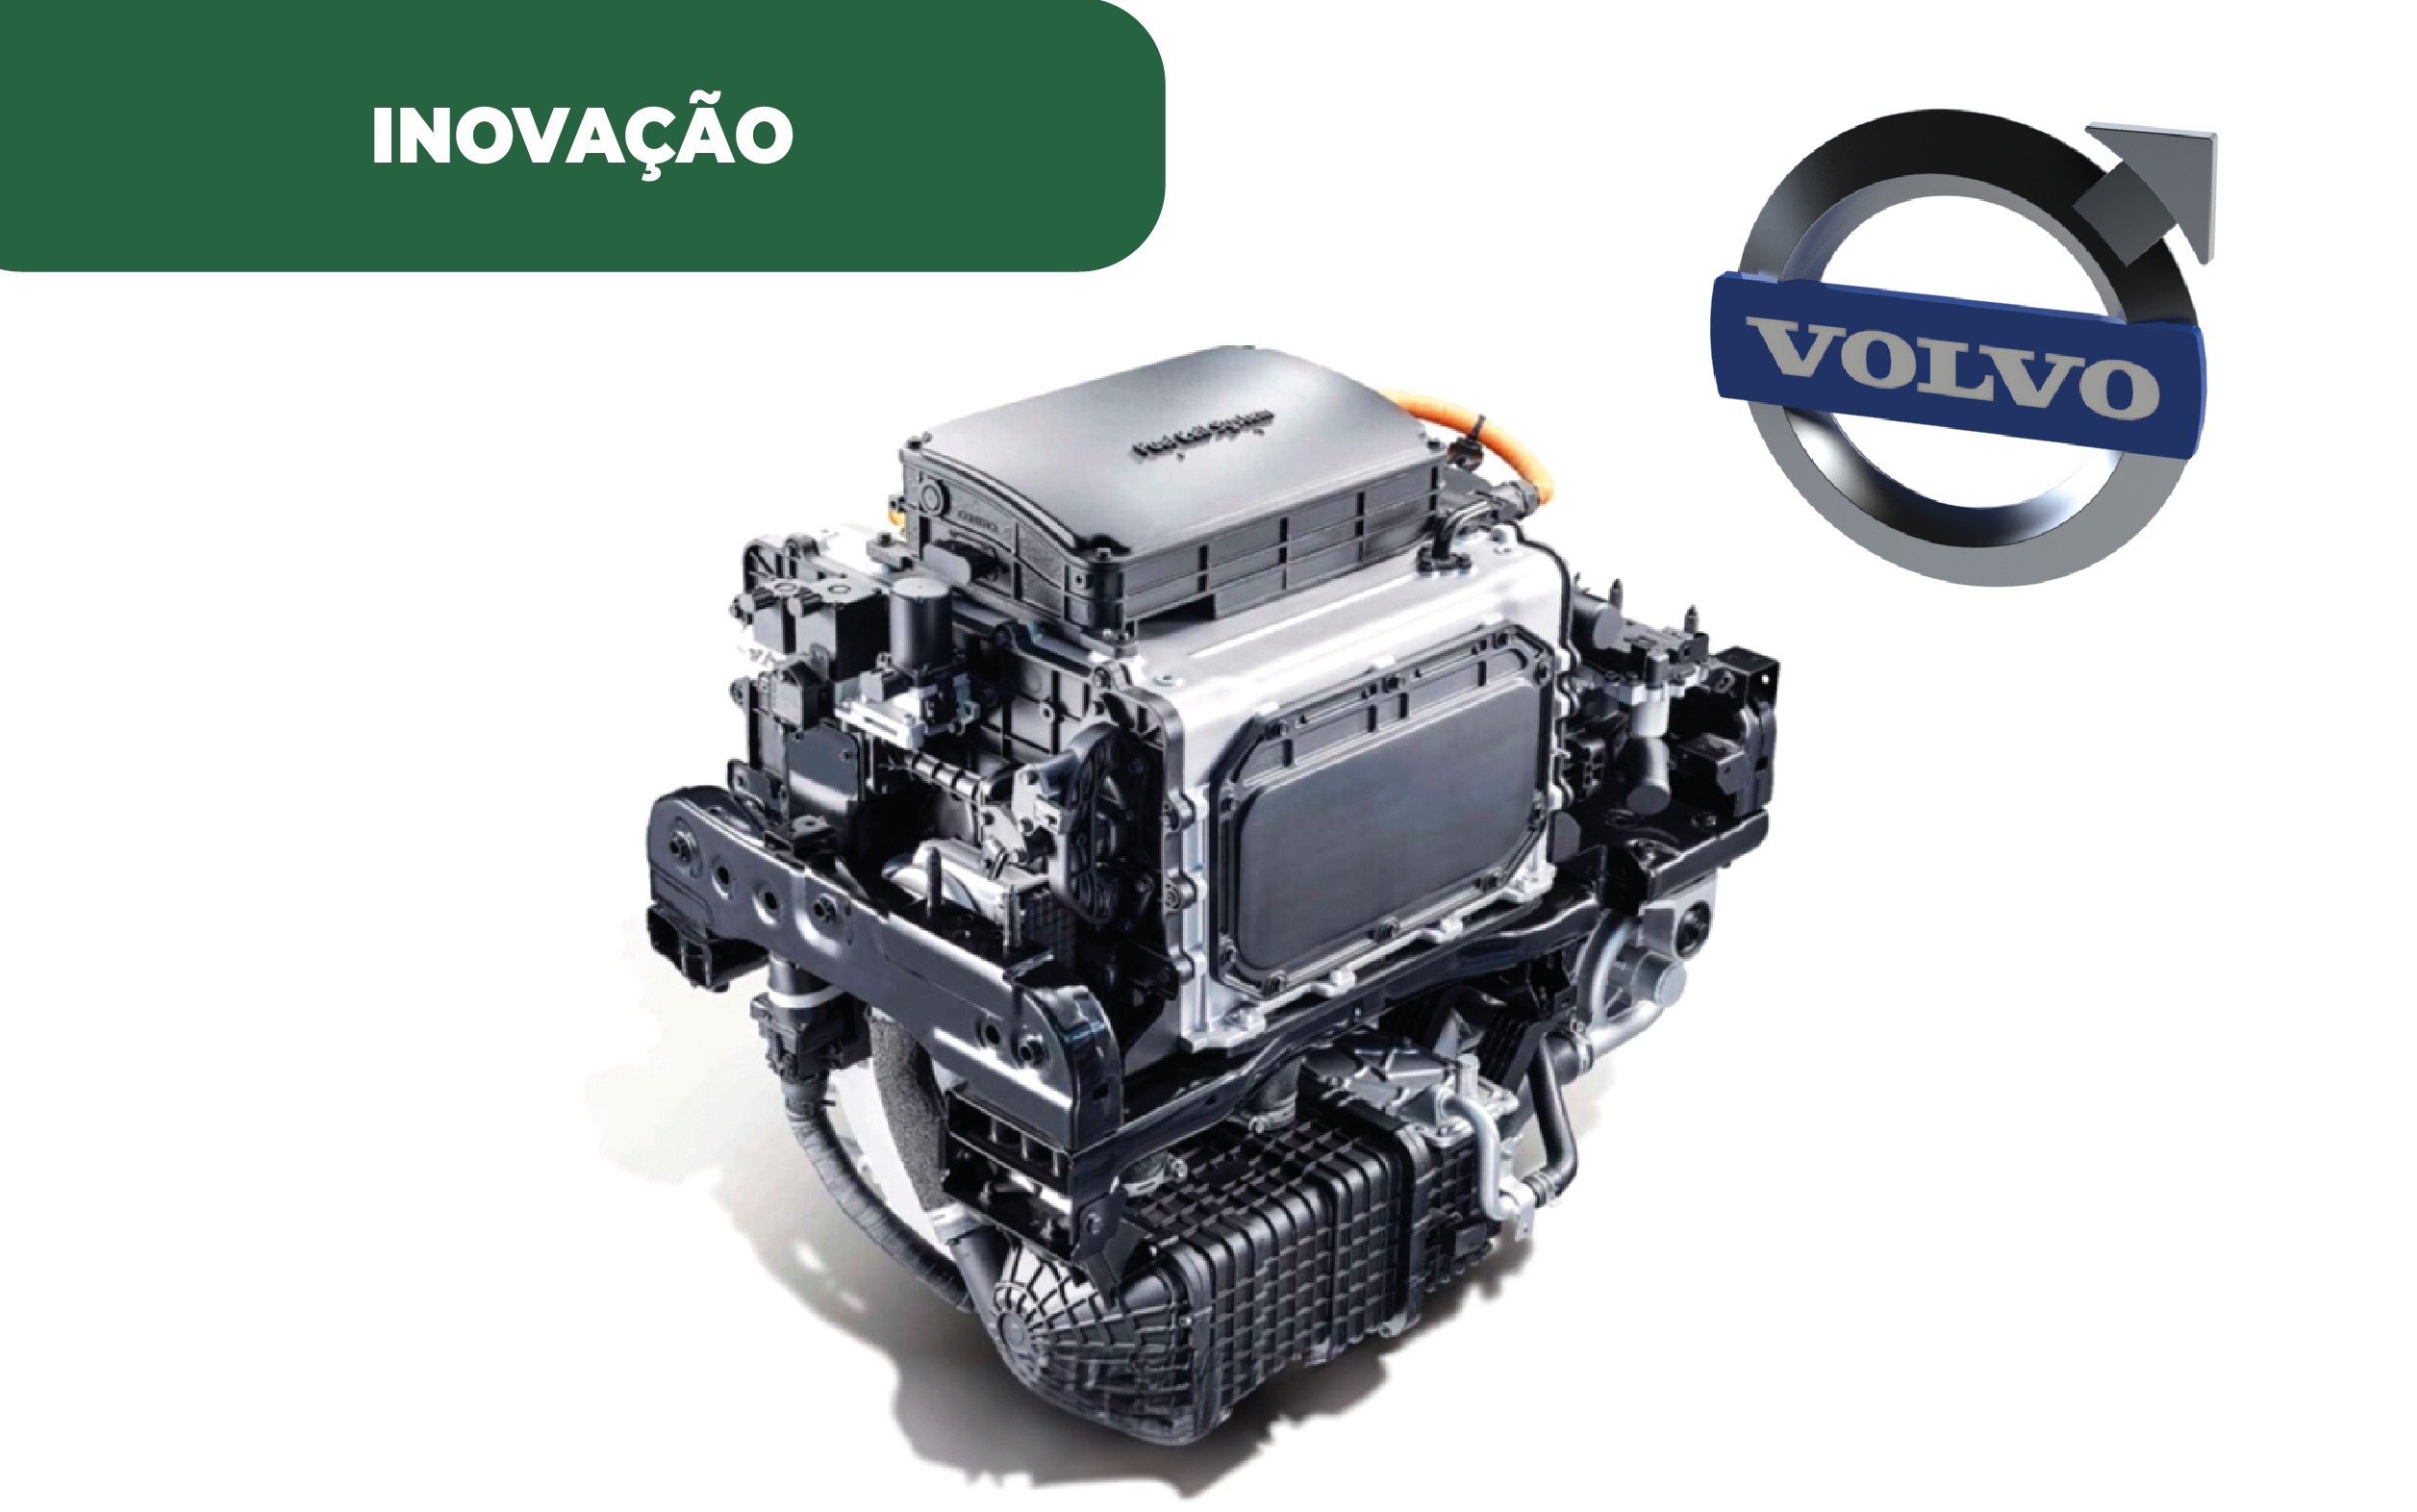 Imagem de exemplo do novo motor a hidrogénio da Volvo, que permite uma melhor adaptação aos veículos com motores a combustão.